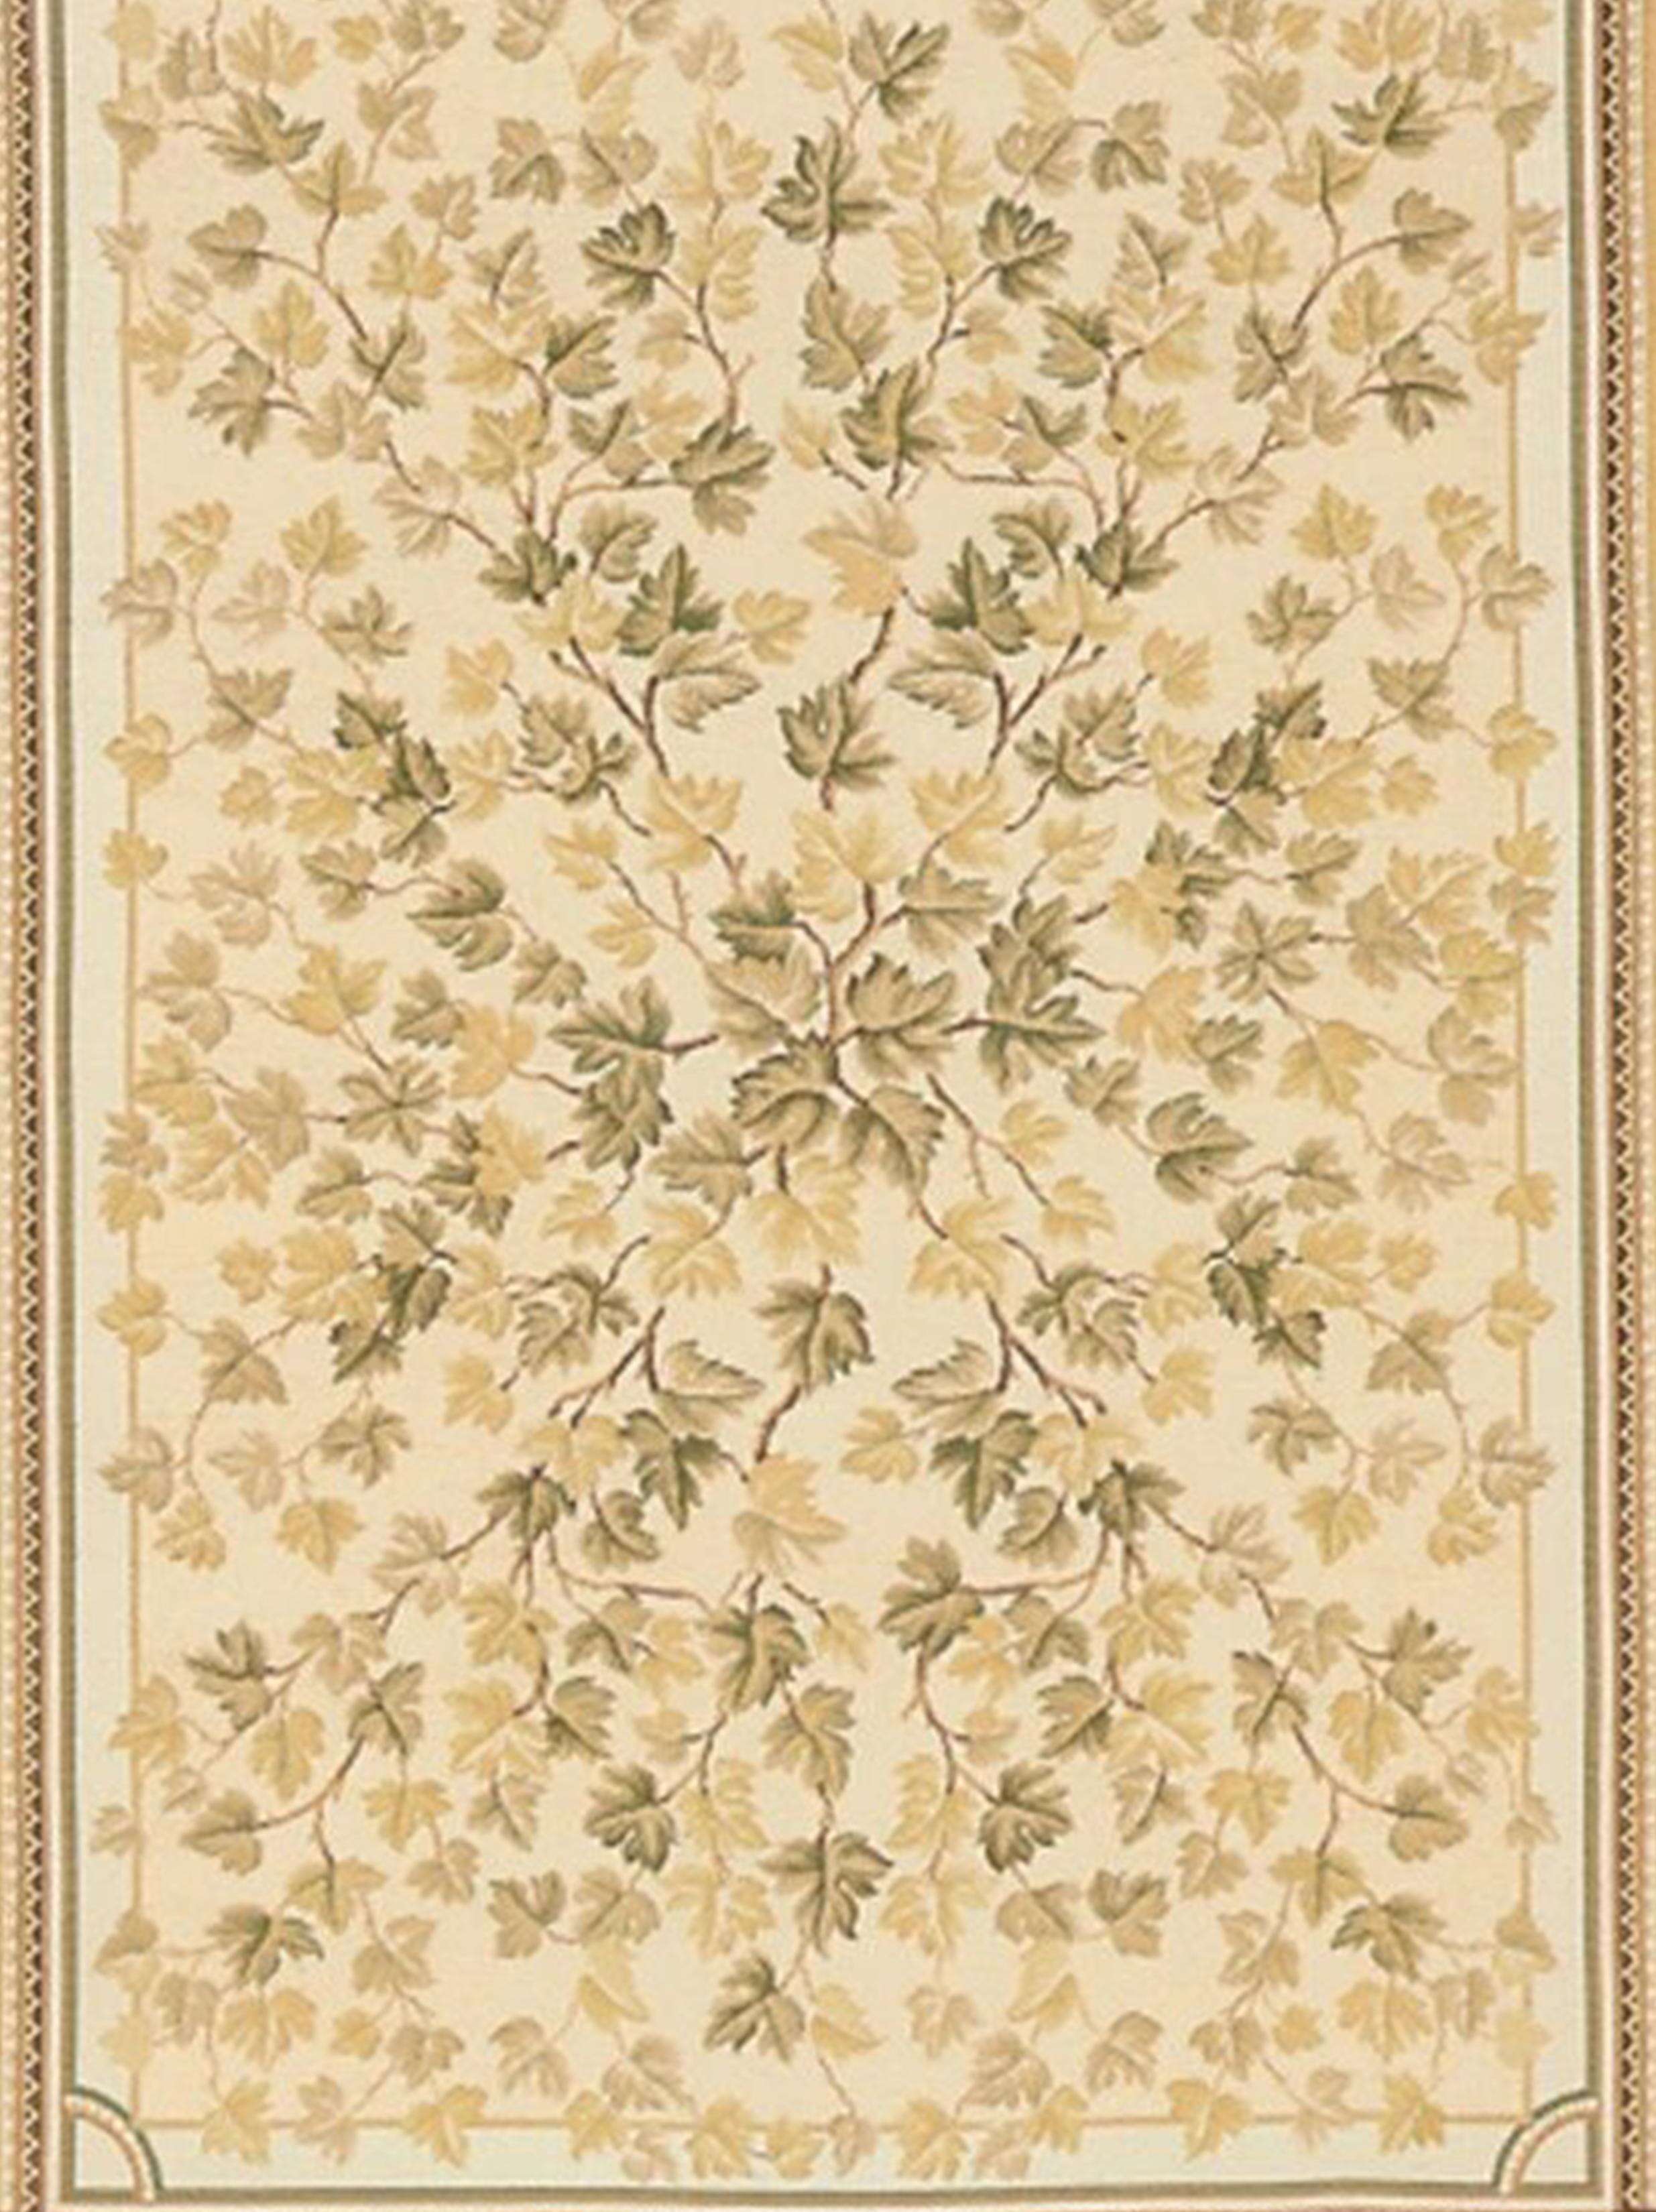 D'après une peinture originale d'Asmara réalisée par Elizabeth Moisan, inspirée par un plafond peint à l'italienne et les décorations du plafond de la maison de Mark Twain dans le Connecticut. Des branches d'automne, chargées de feuilles d'or et de